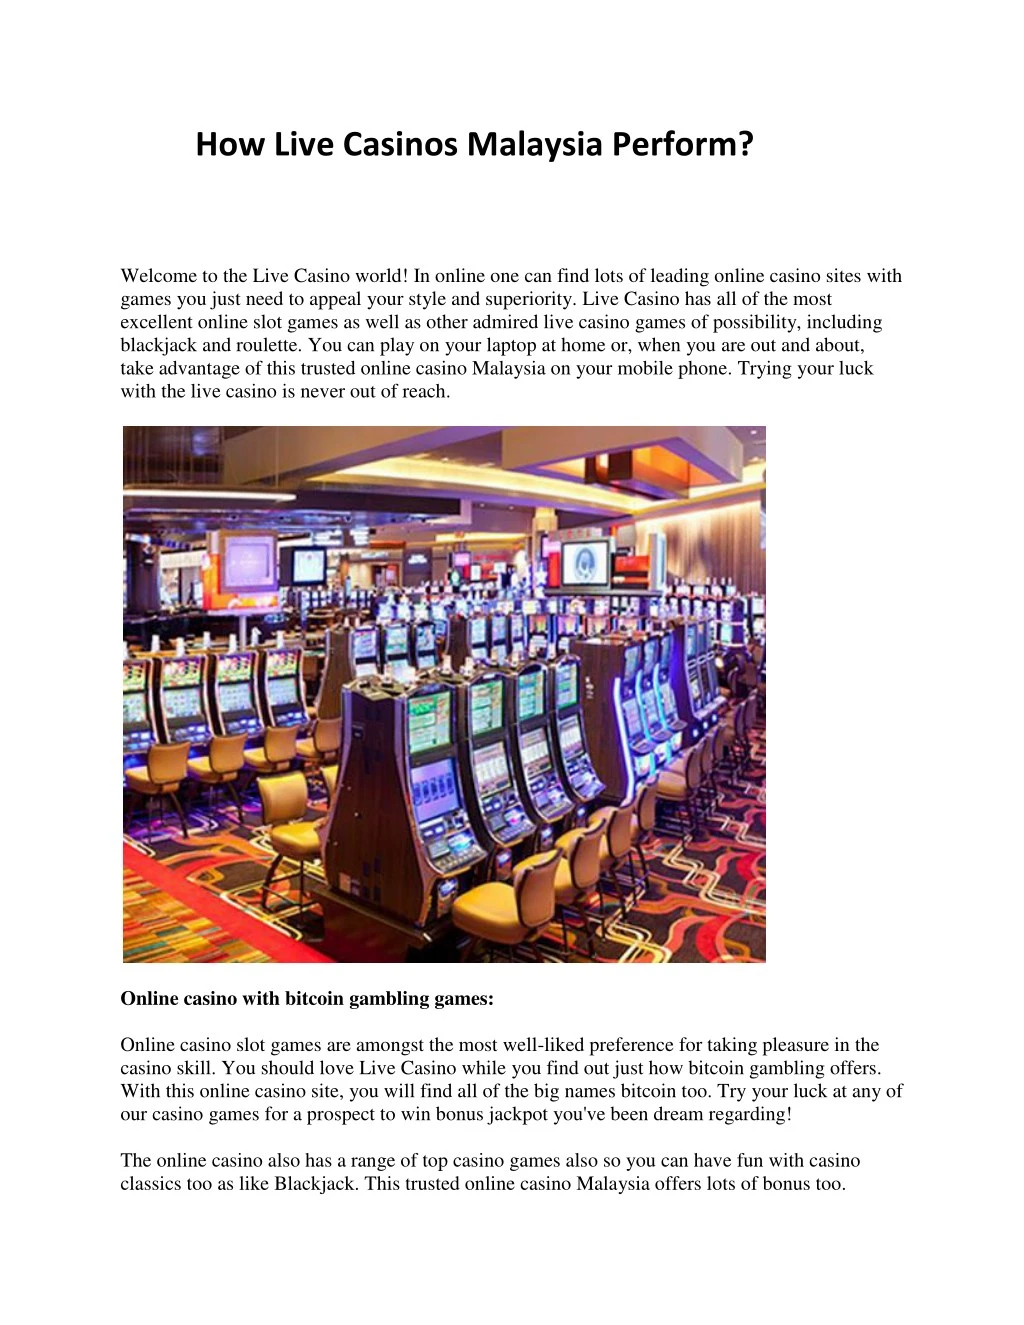 how live casinos malaysia perform